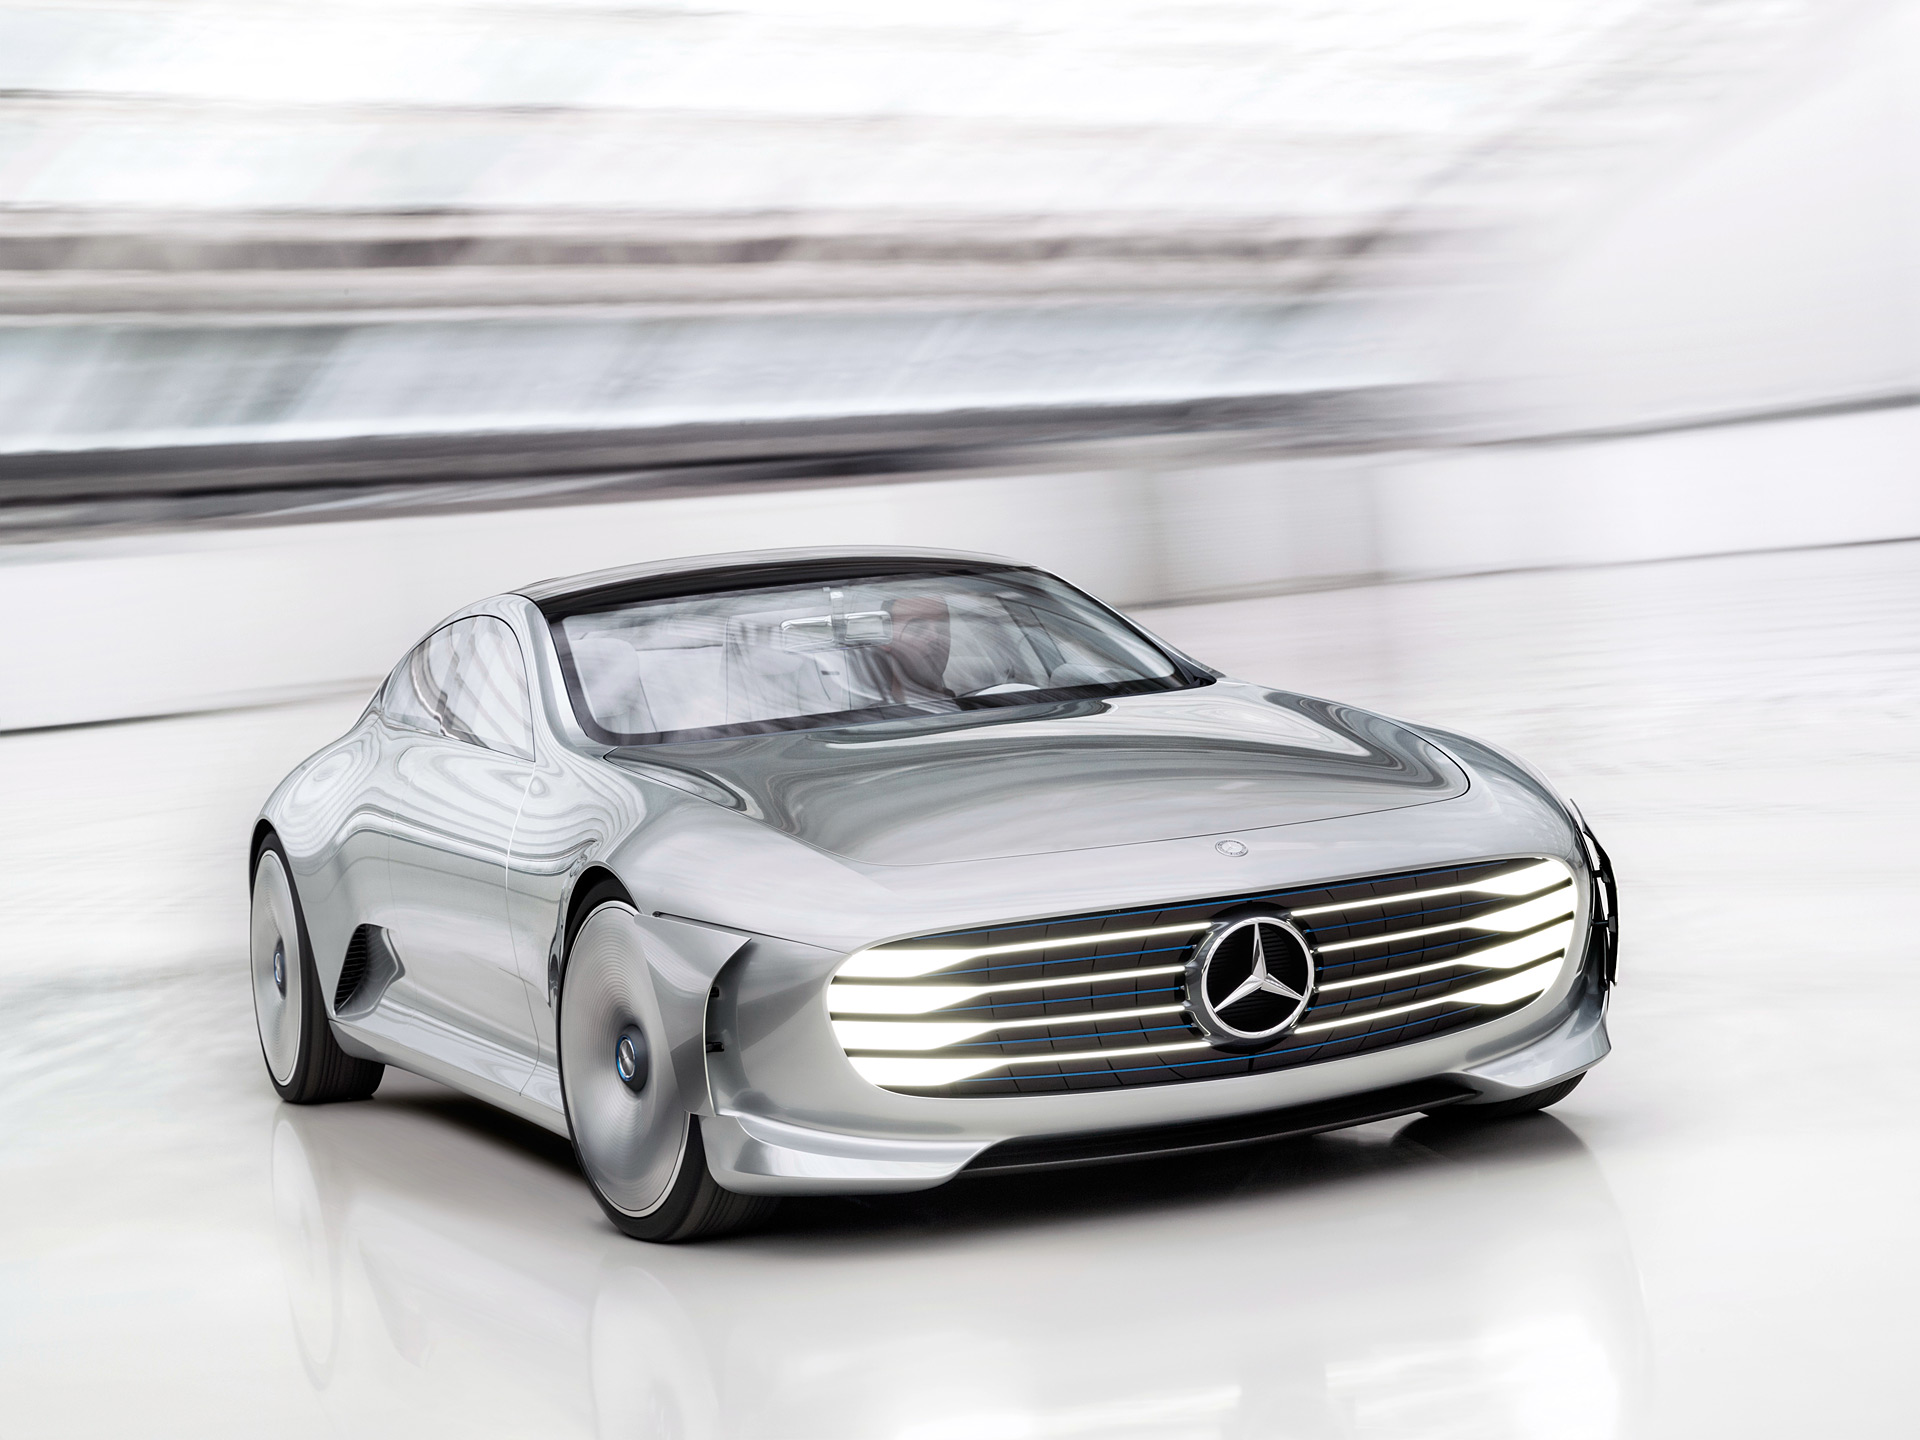  2015 Mercedes-Benz IAA Concept Wallpaper.